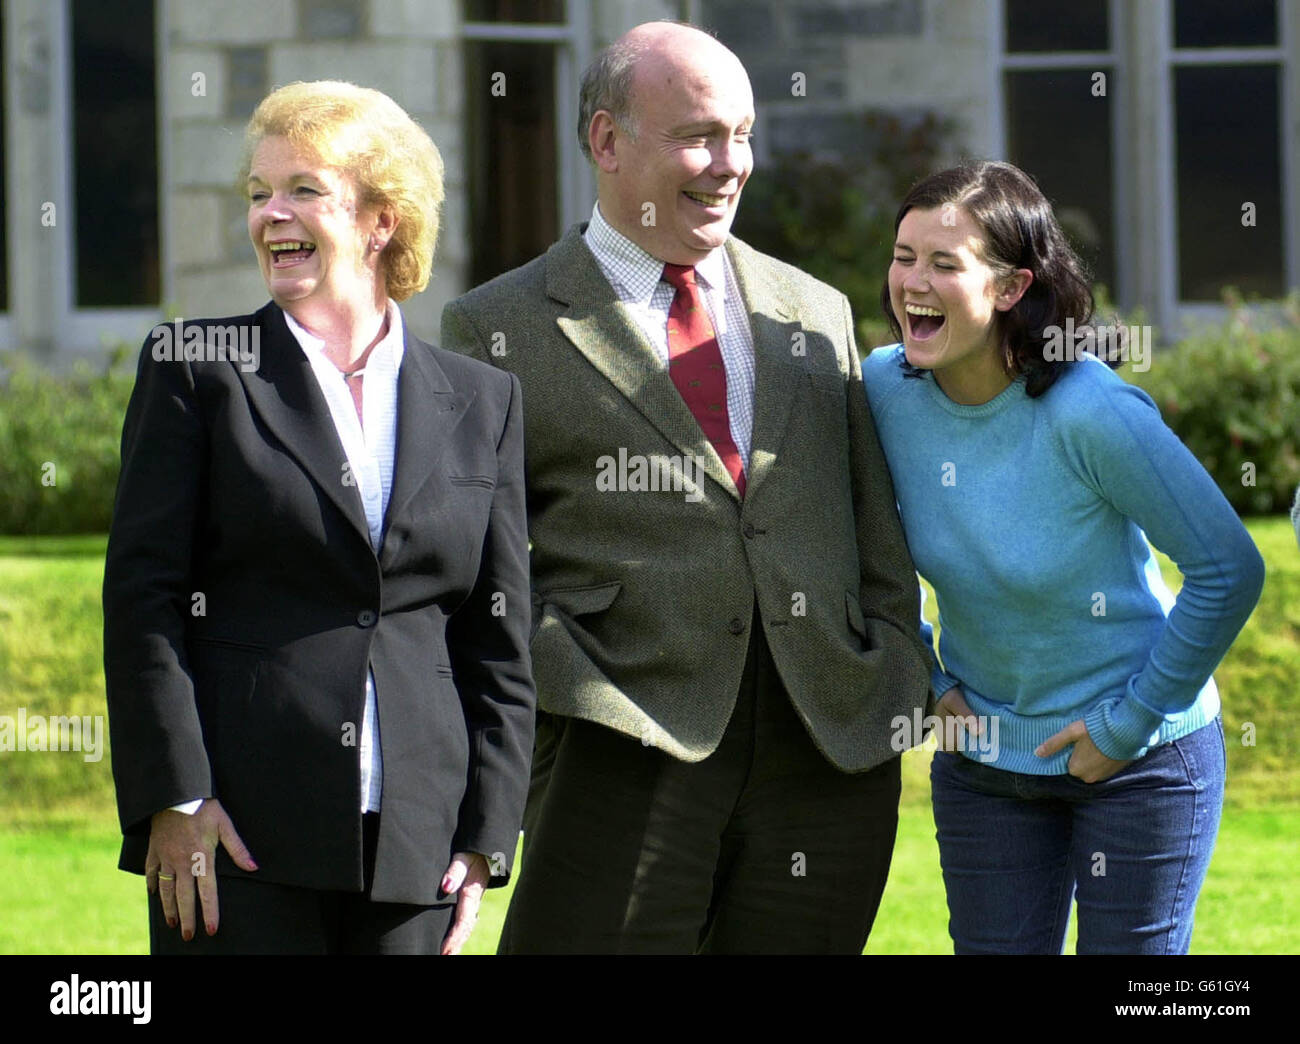 Il segretario scozzese Helen Liddell (a sinistra) condivide una battuta con i membri del cast Julian Fellows e Dawn Steele durante una visita al set della serie della BBC Monarch of the Glen, girato vicino a Newtonmore nelle Highlands. Foto Stock